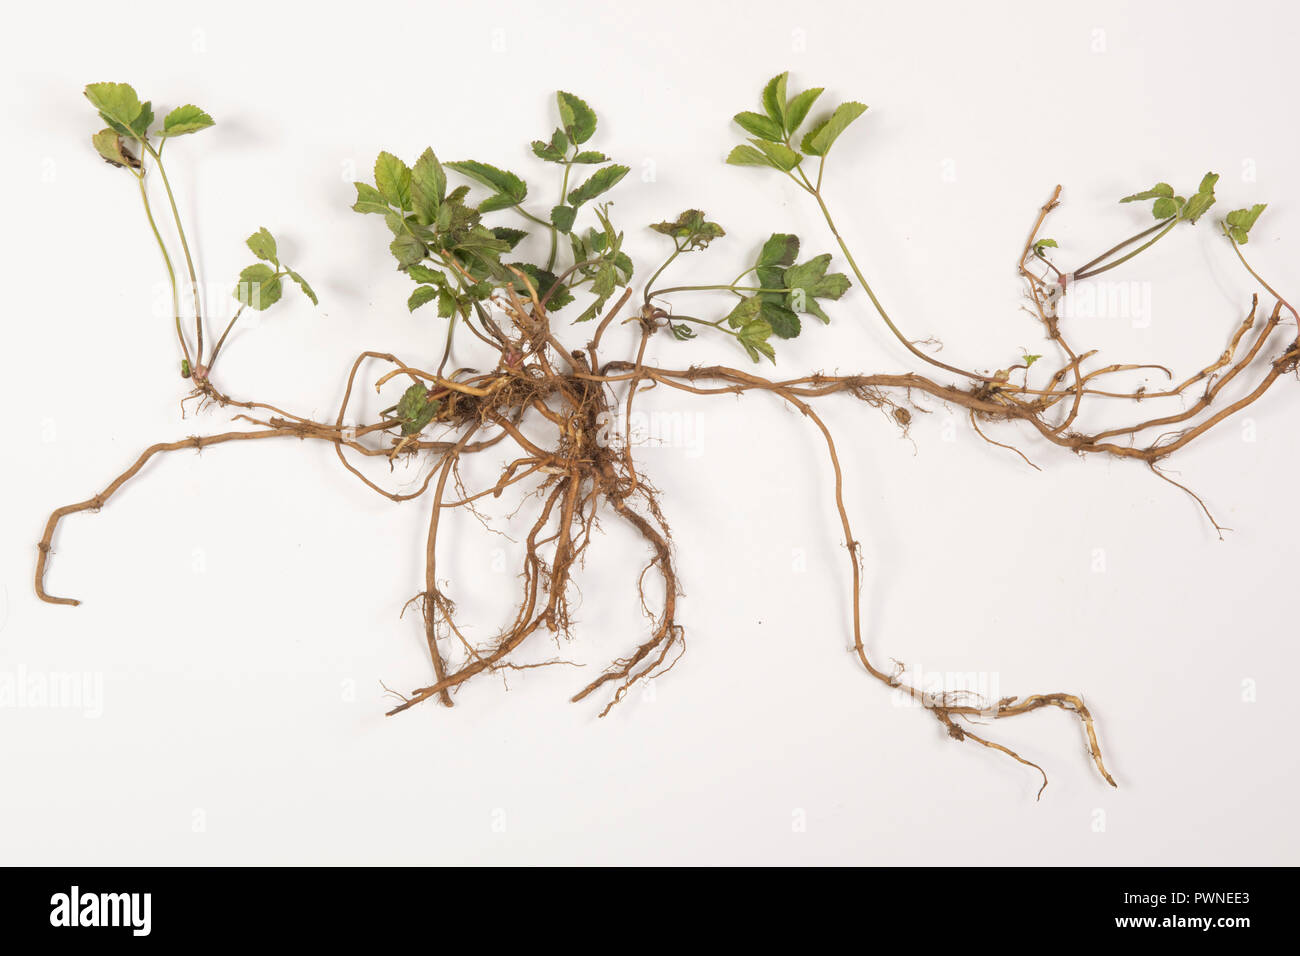 El anciano molido, Aegopodium podagraria, planta a partir de un parche vegetal muestreado para mostrar raíces rizomatosas que se arrastran Foto de stock